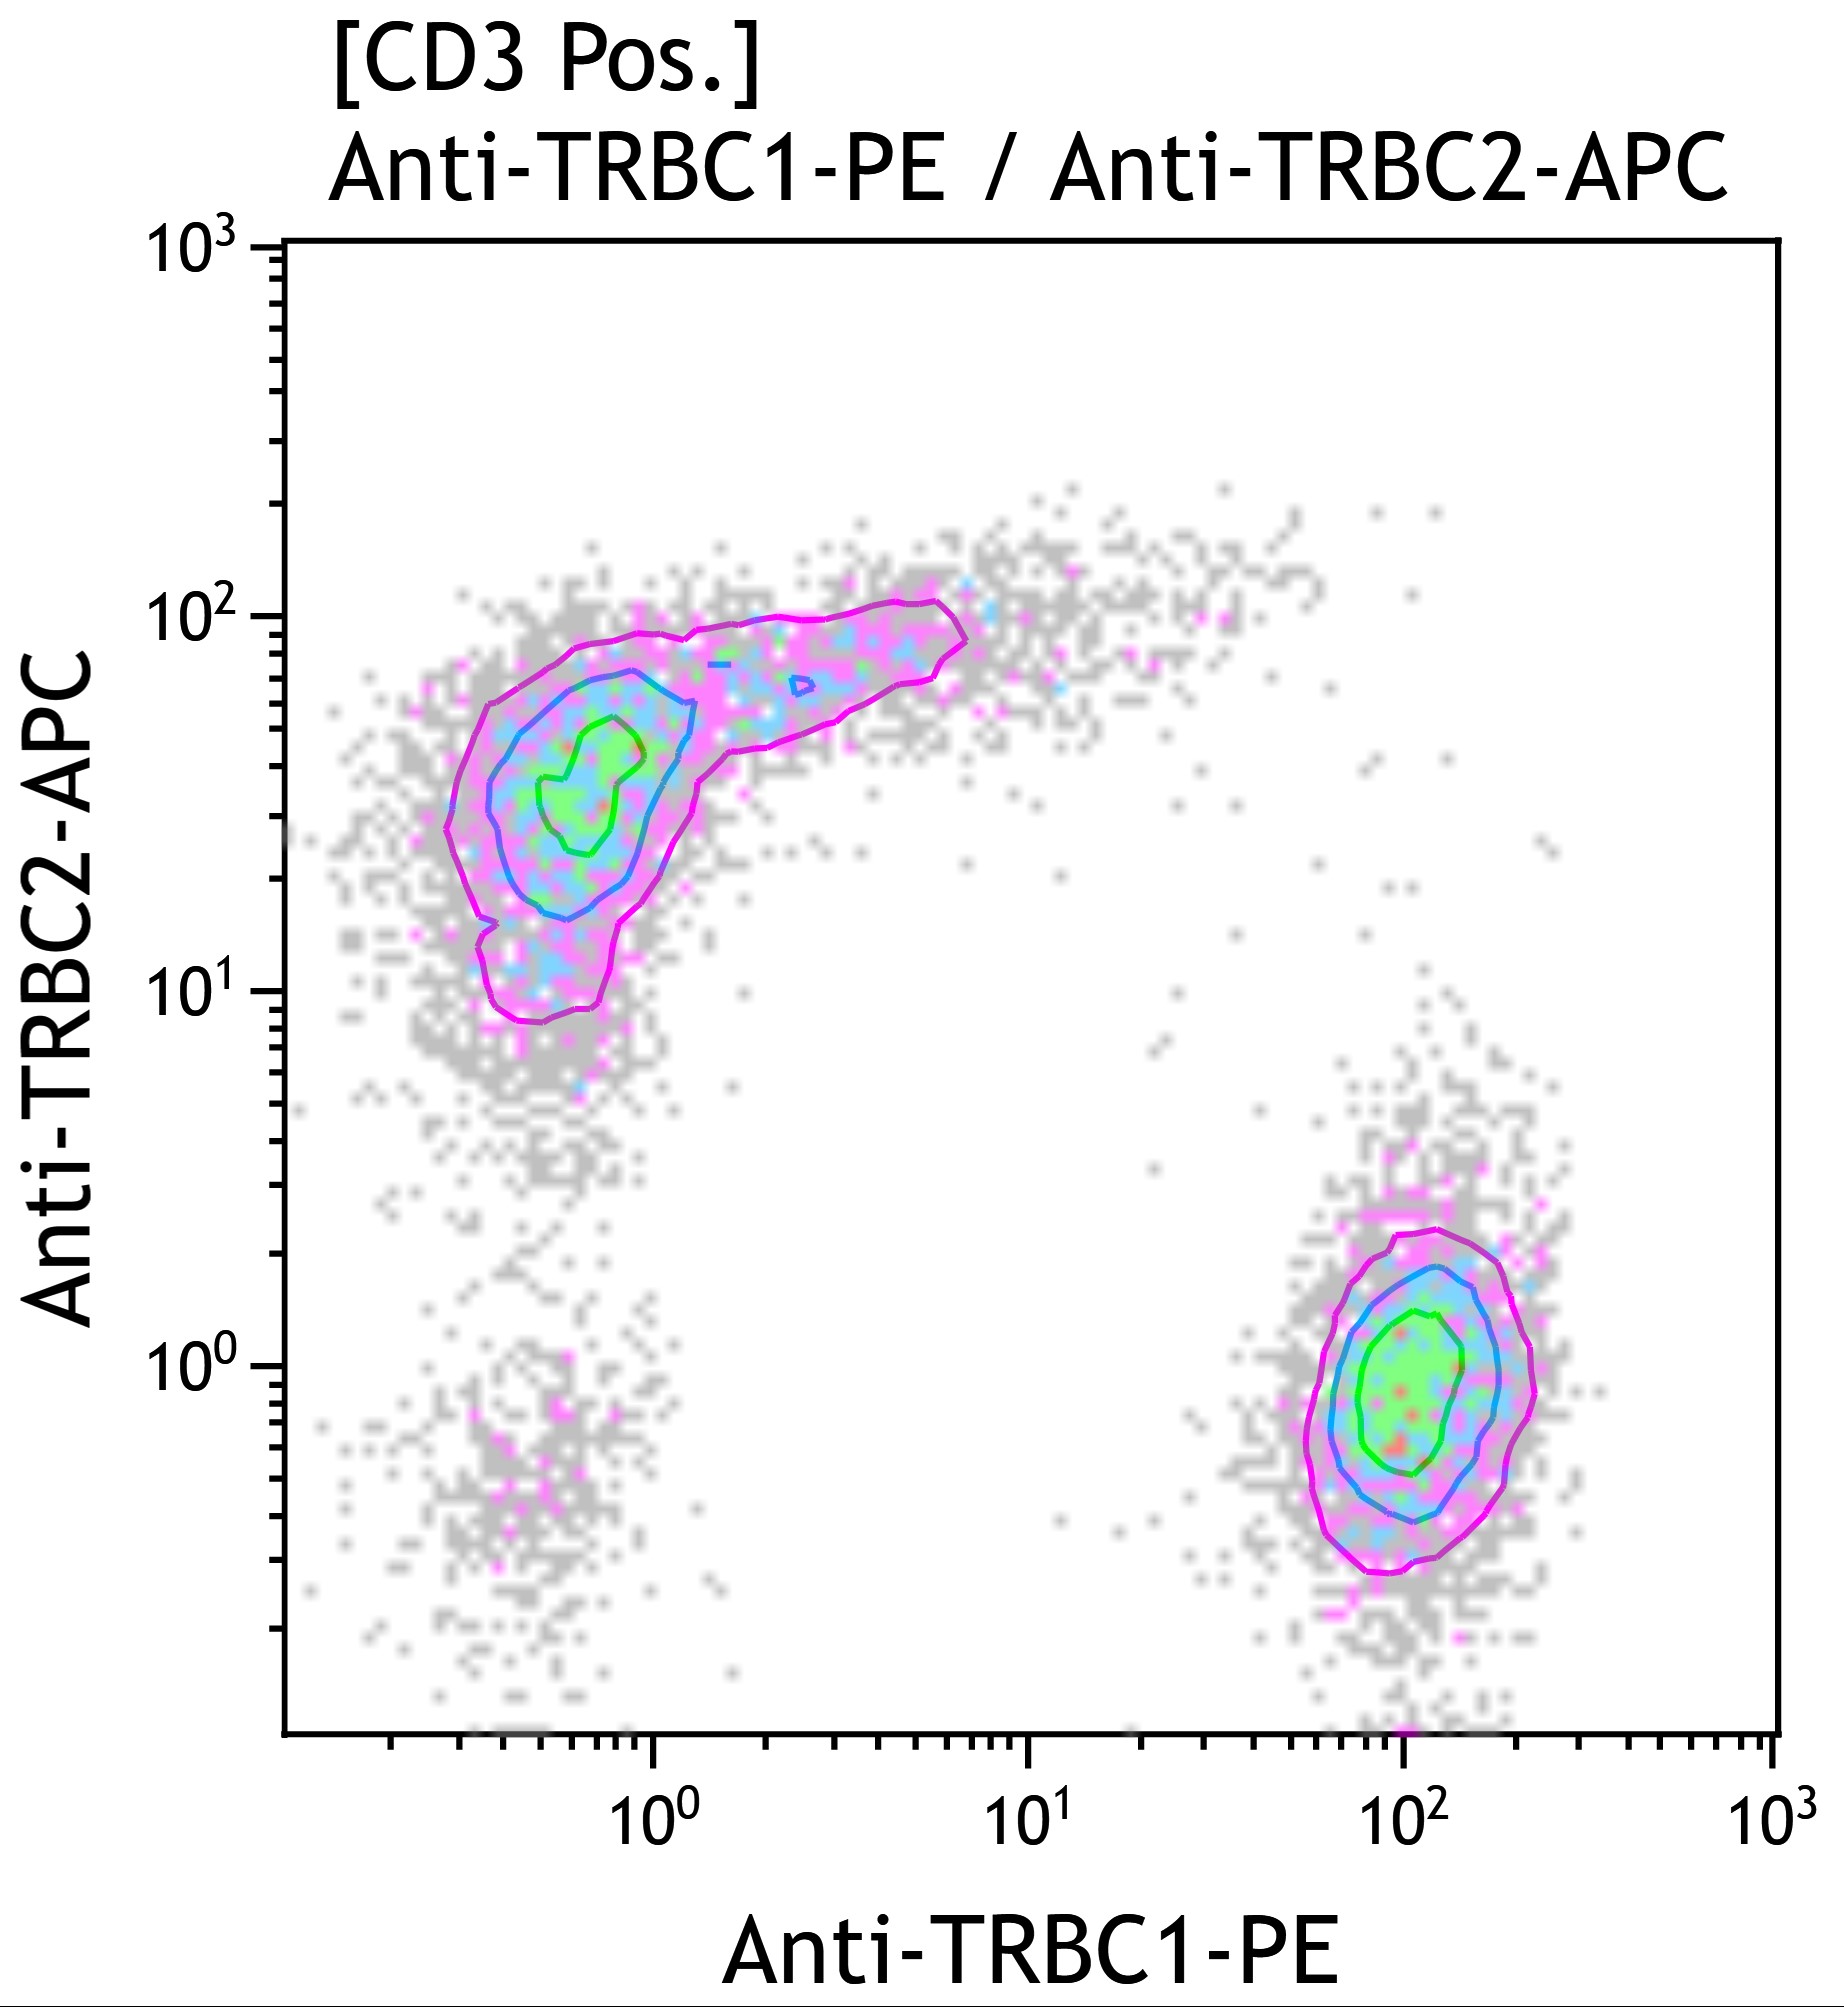 2 parametric contour histogram of trbc1 vs trbc2 gated on cd3 positive cells